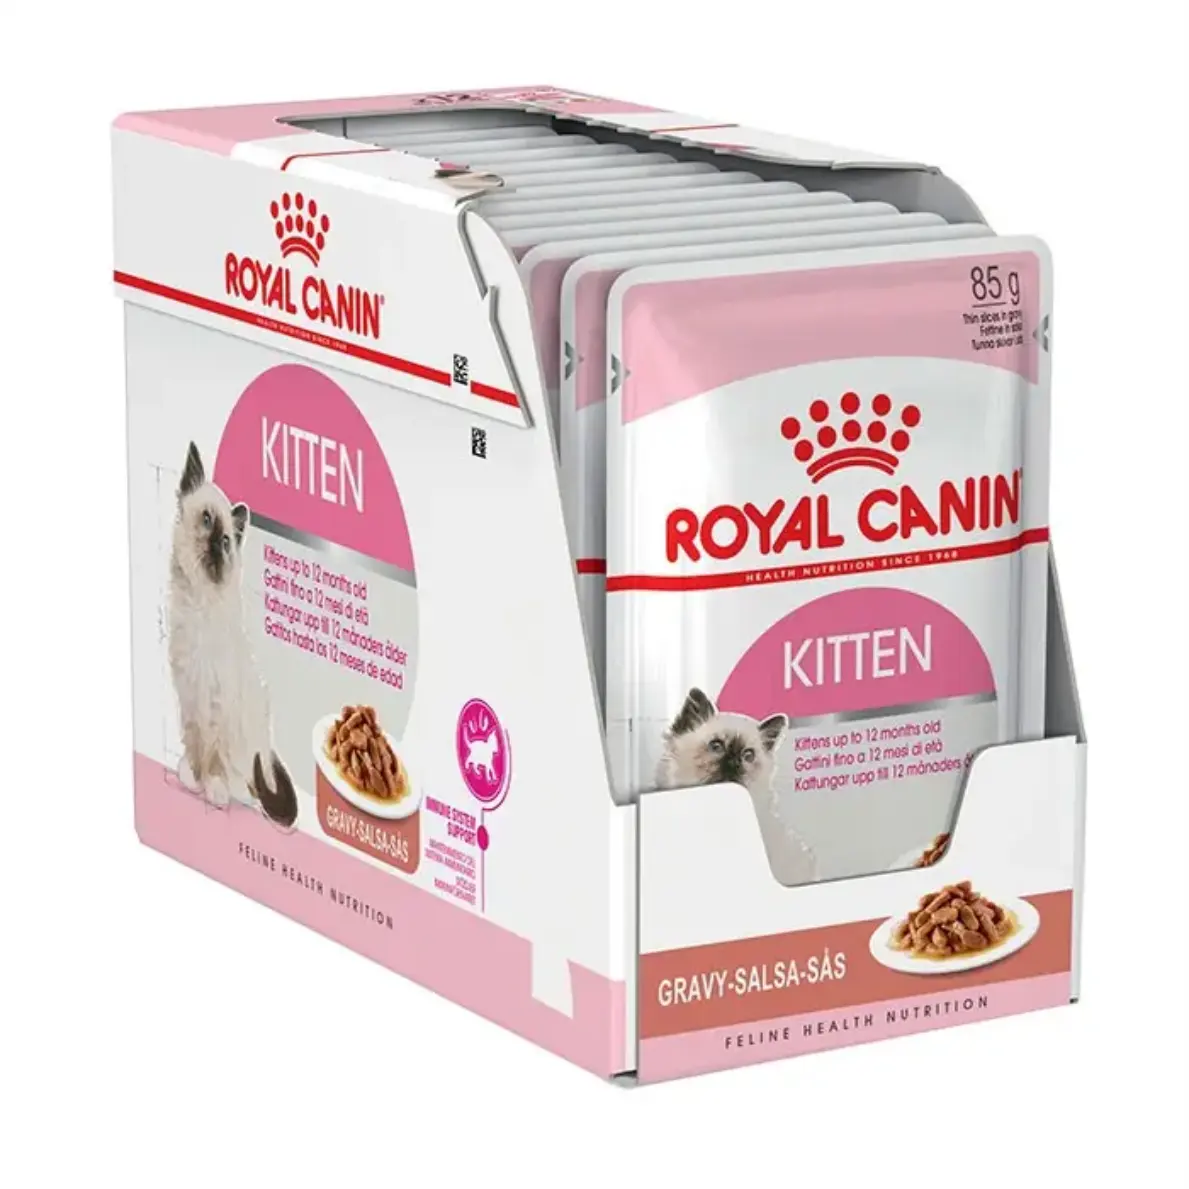 Оптовая цена, Королевский канин, упаковка 20 кг, сухой корм для собак/где купить Королевский канин по доступной цене